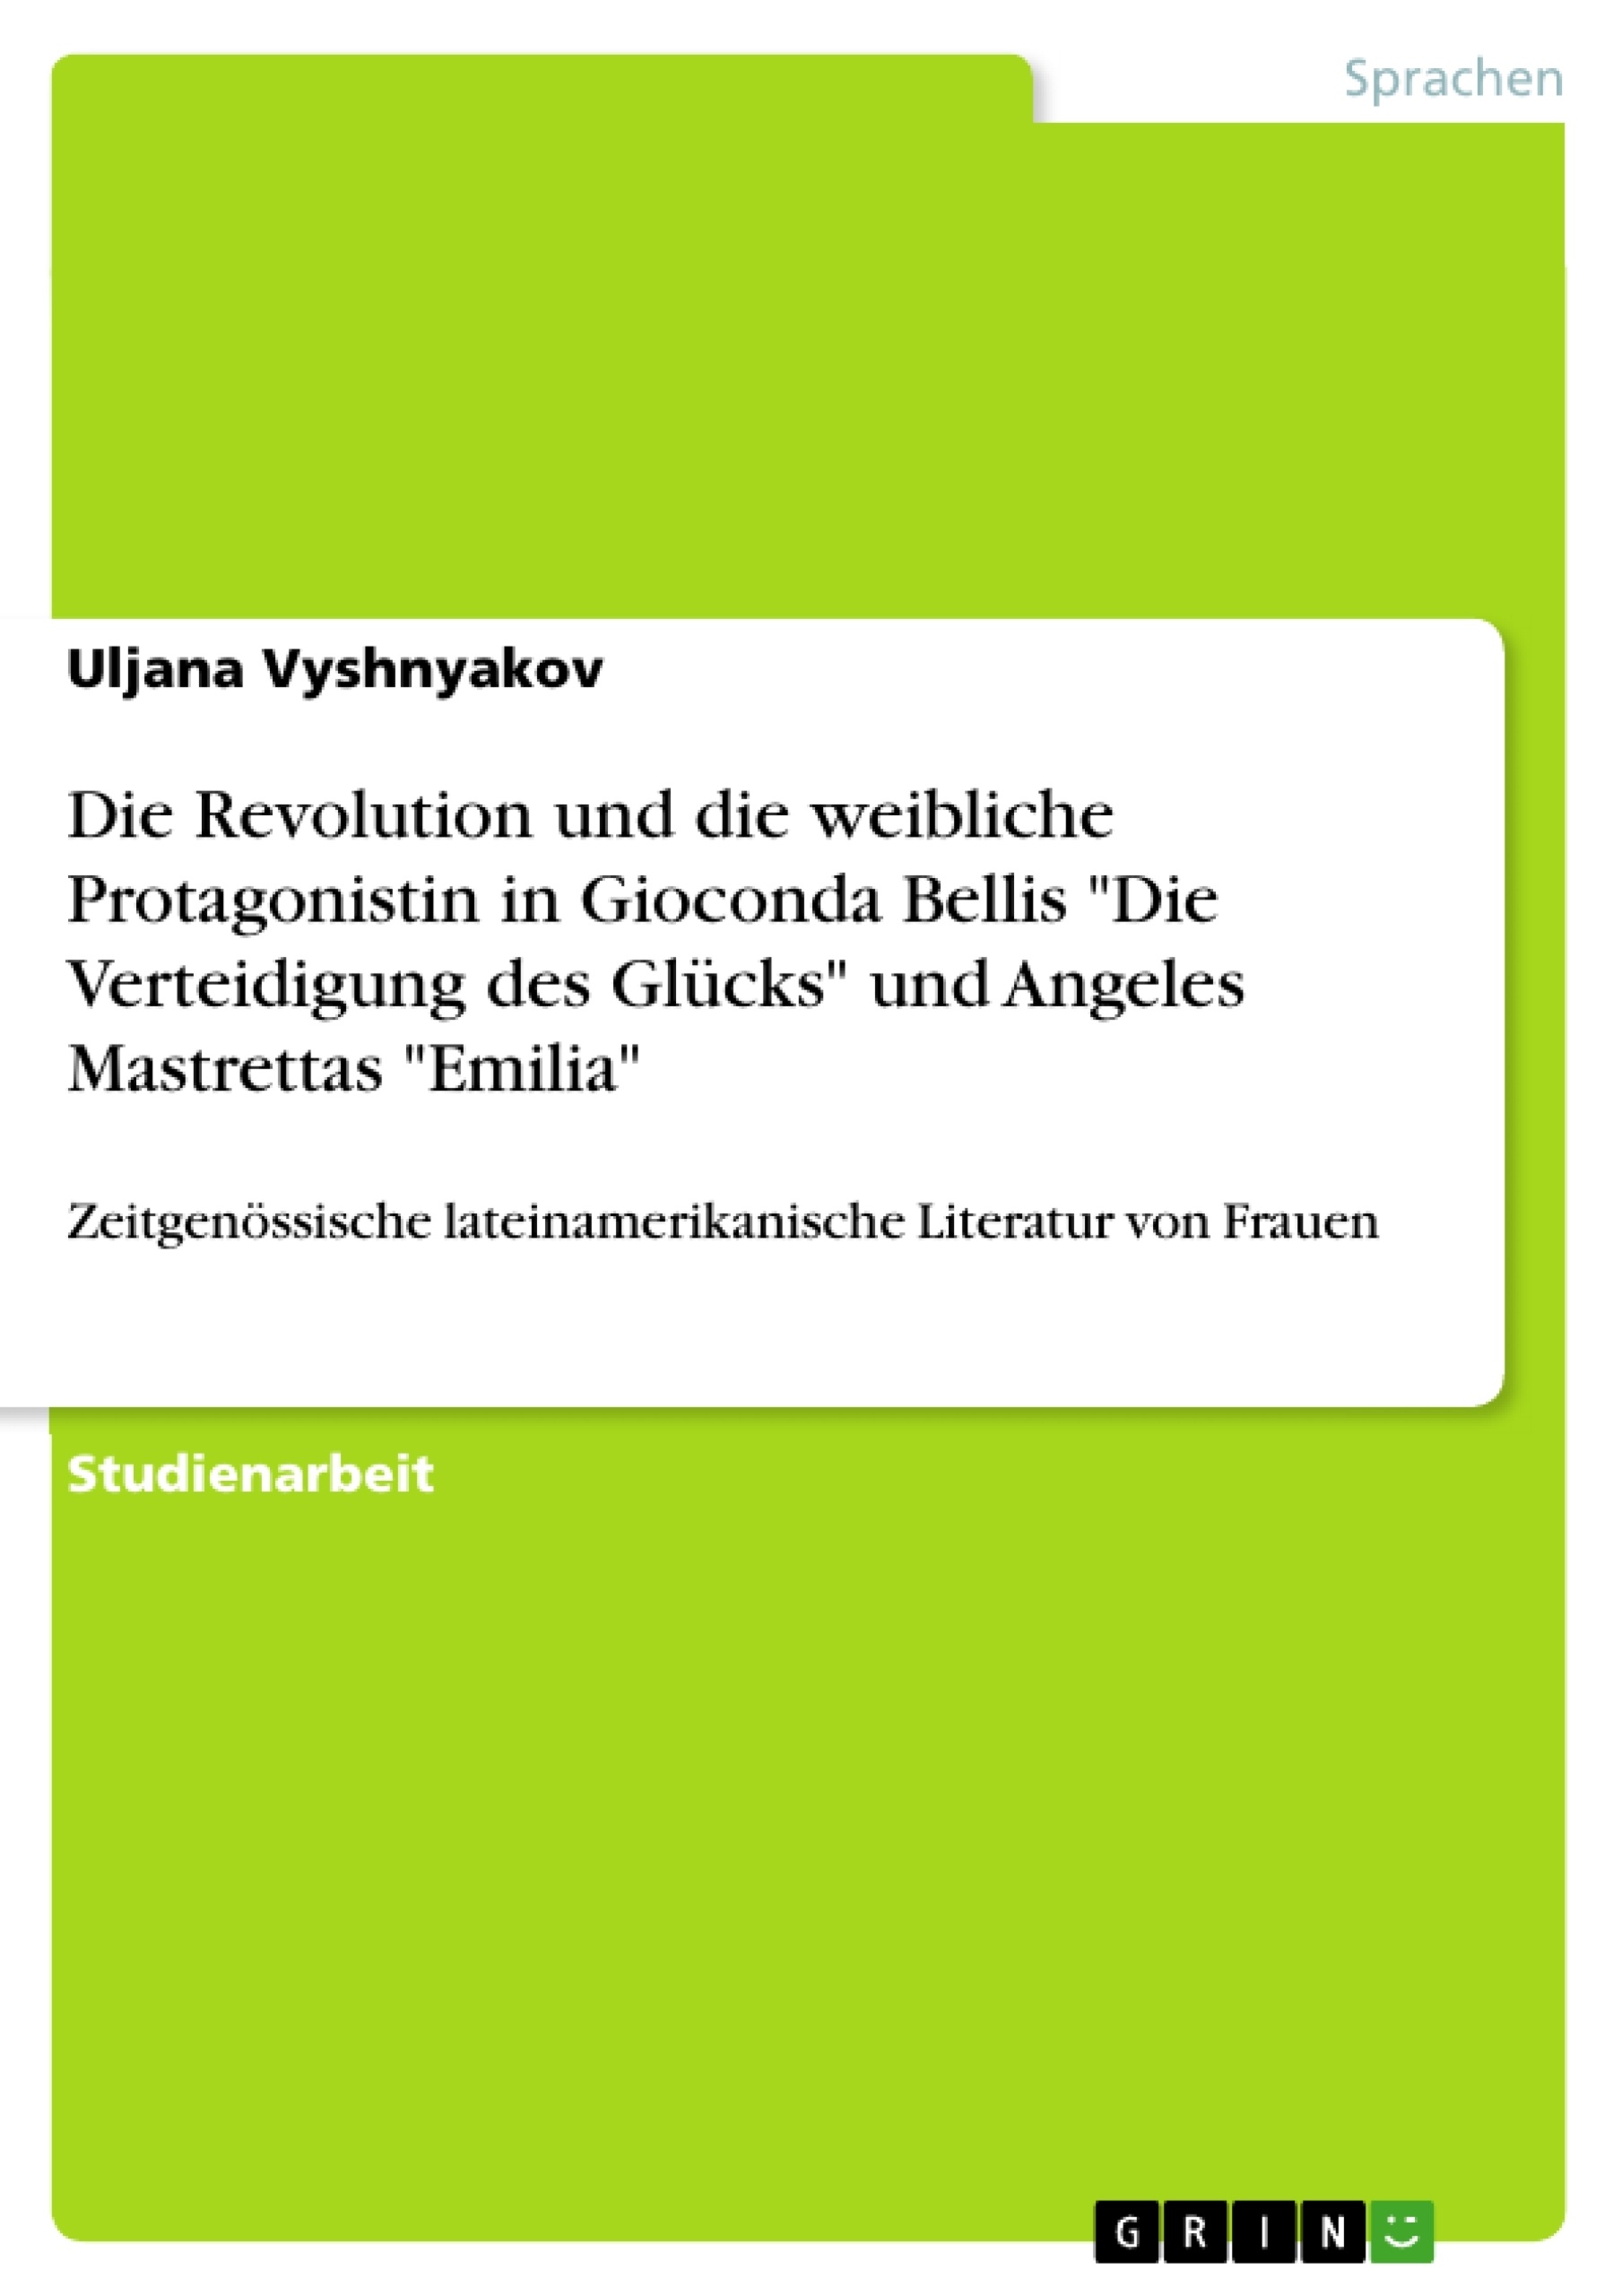 Titel: Die Revolution und die weibliche Protagonistin in Gioconda Bellis "Die Verteidigung des Glücks" und Angeles Mastrettas "Emilia"